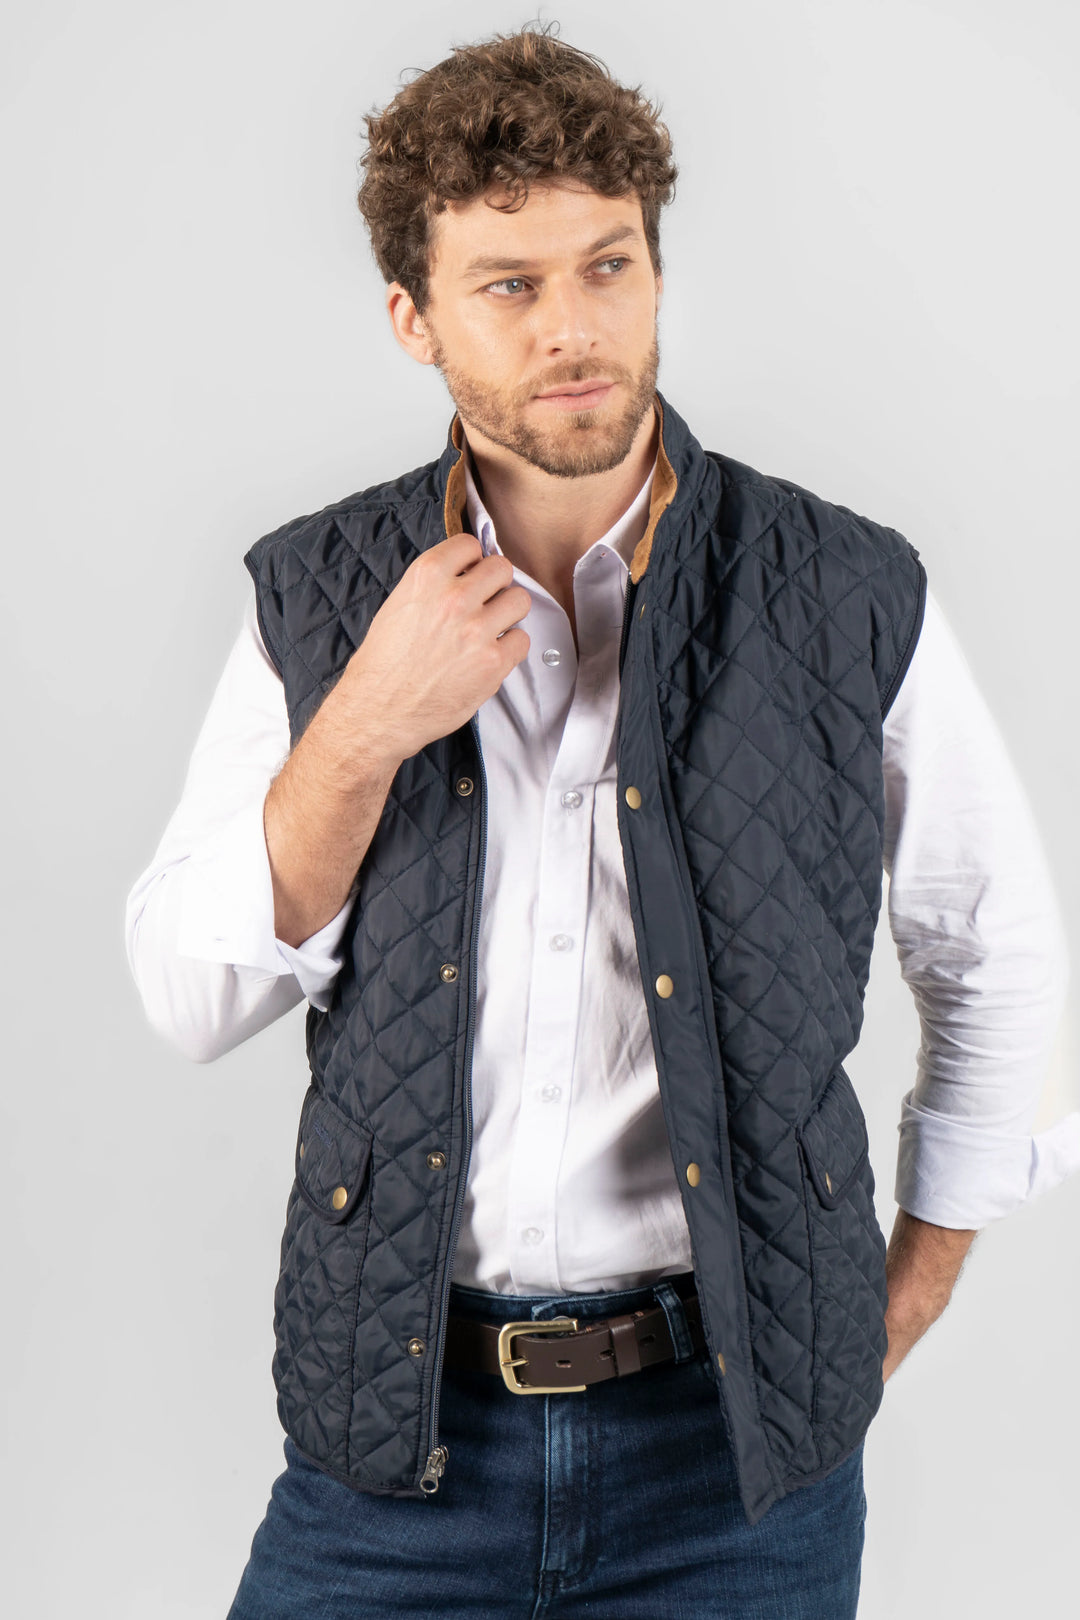 chaleco para hombre Quilted Armatura, una prenda con la esencia clásica y atemporal que caracteriza a la marca.